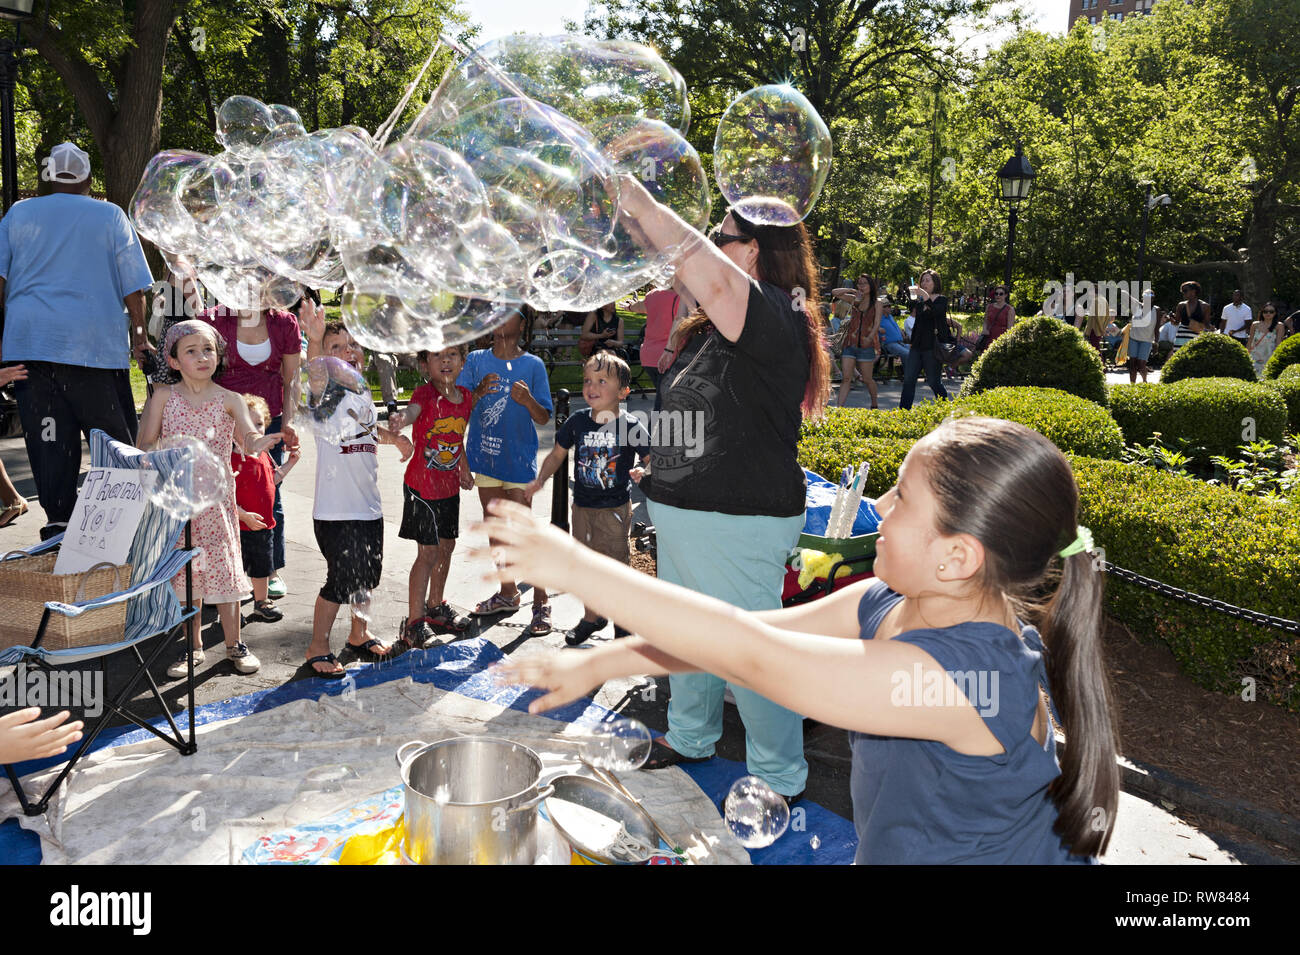 Les enfants heureux et ravis par les grandes bulles dans Washington Square Park à New York, 20014. Banque D'Images